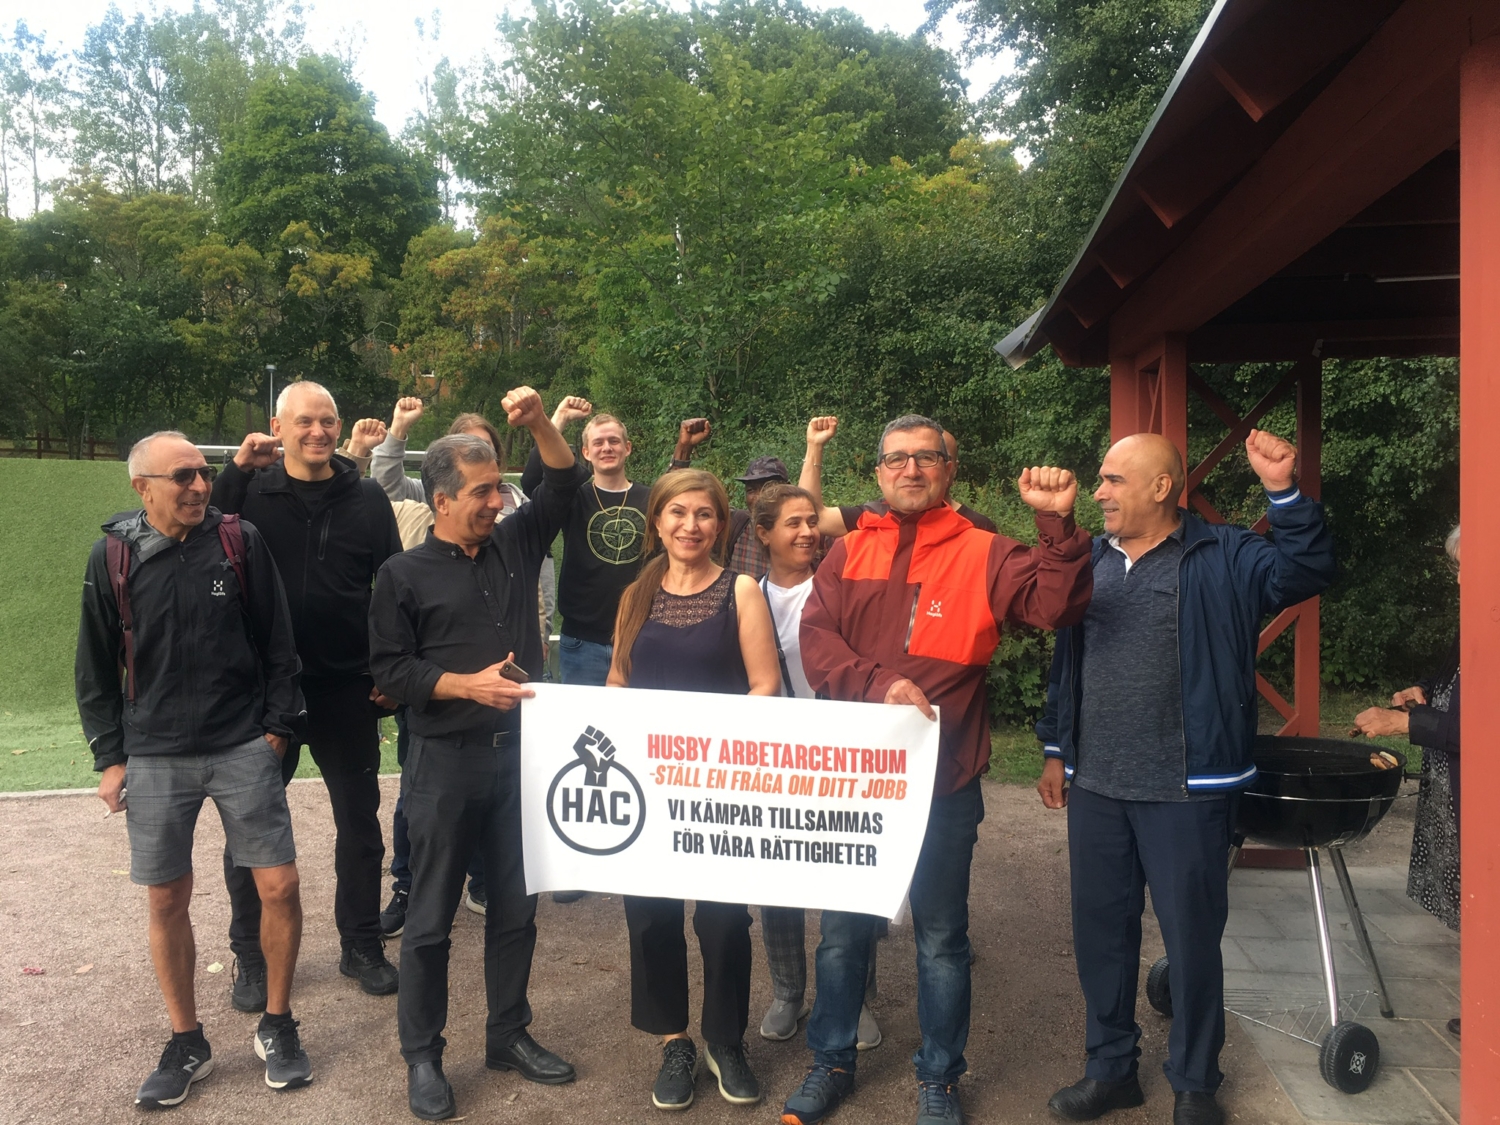 Husby arbetarcentrum grillar i solidaritet med Zalando-arbetarna